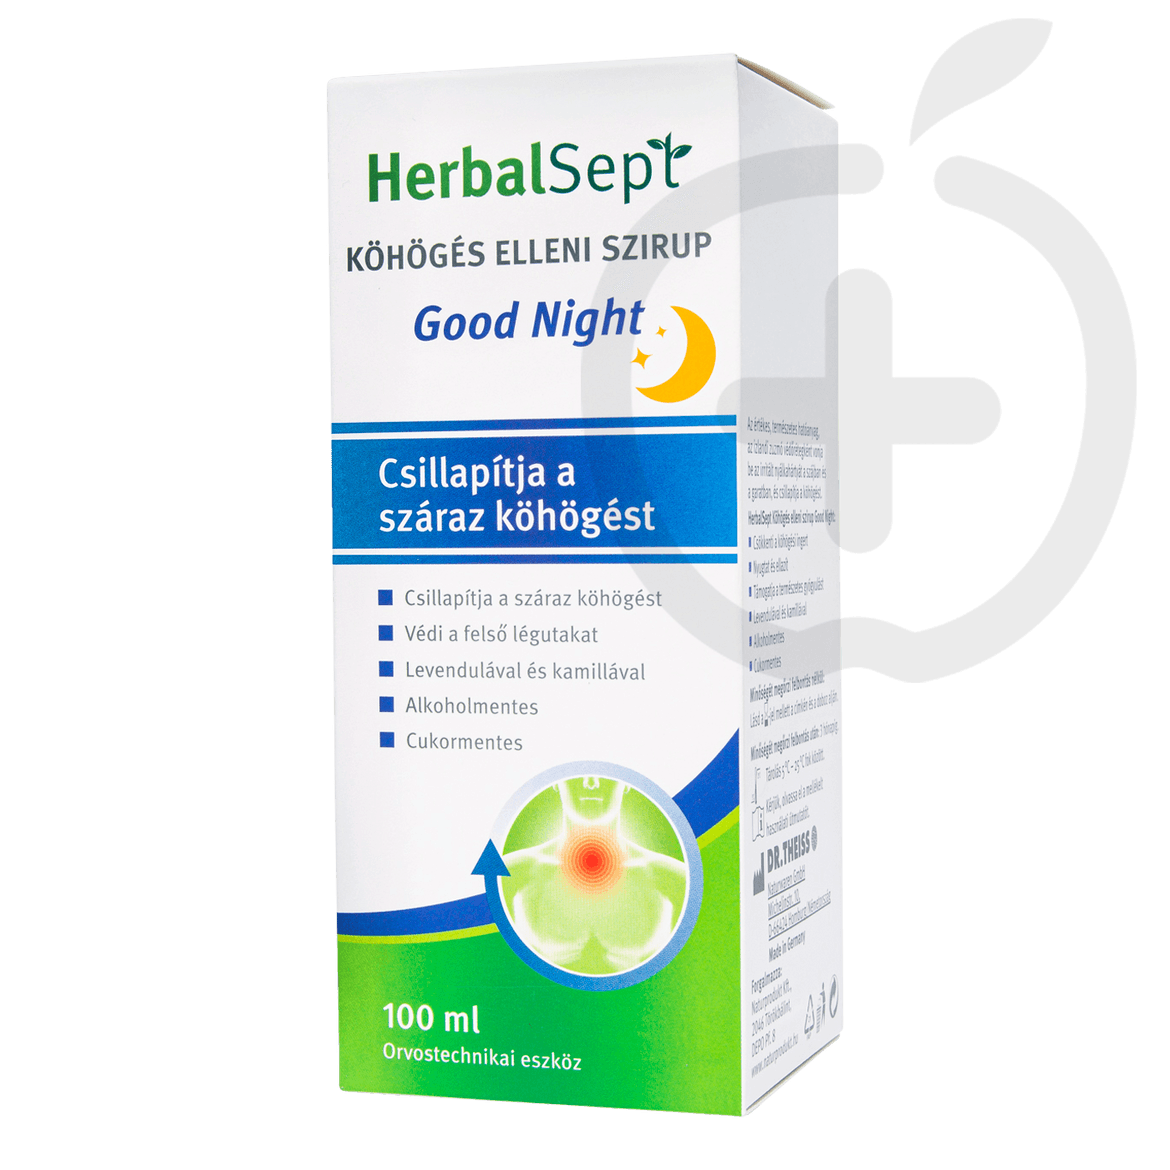 HerbalSept Good Night köhögés elleni szirup 100 ml